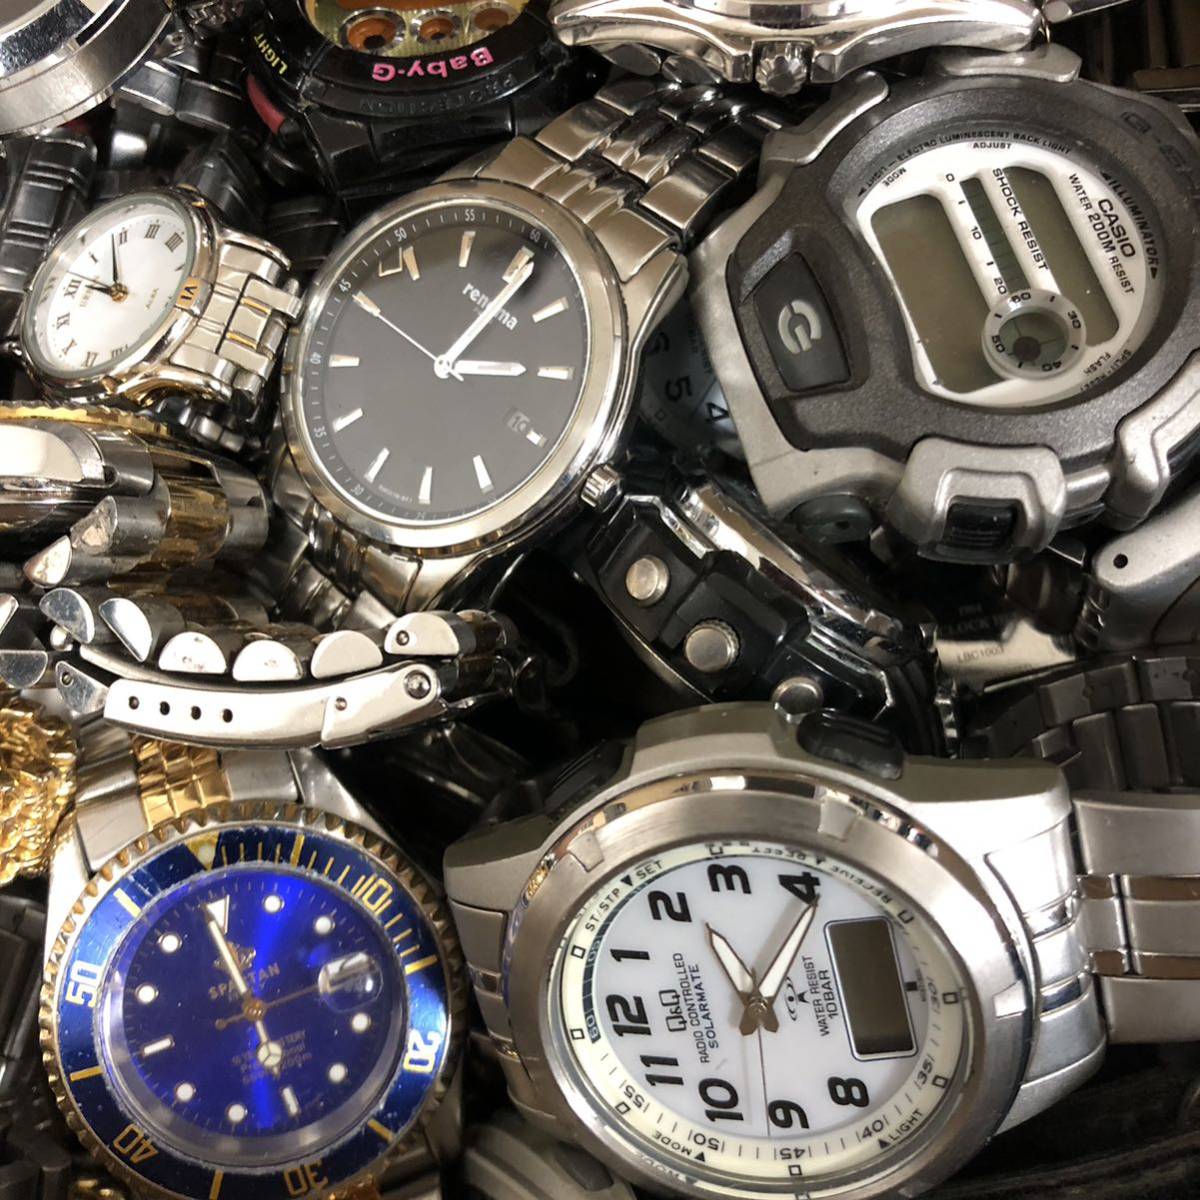 40個まとめ売り 腕時計ジャンク品セット www.thesciencebasement.org